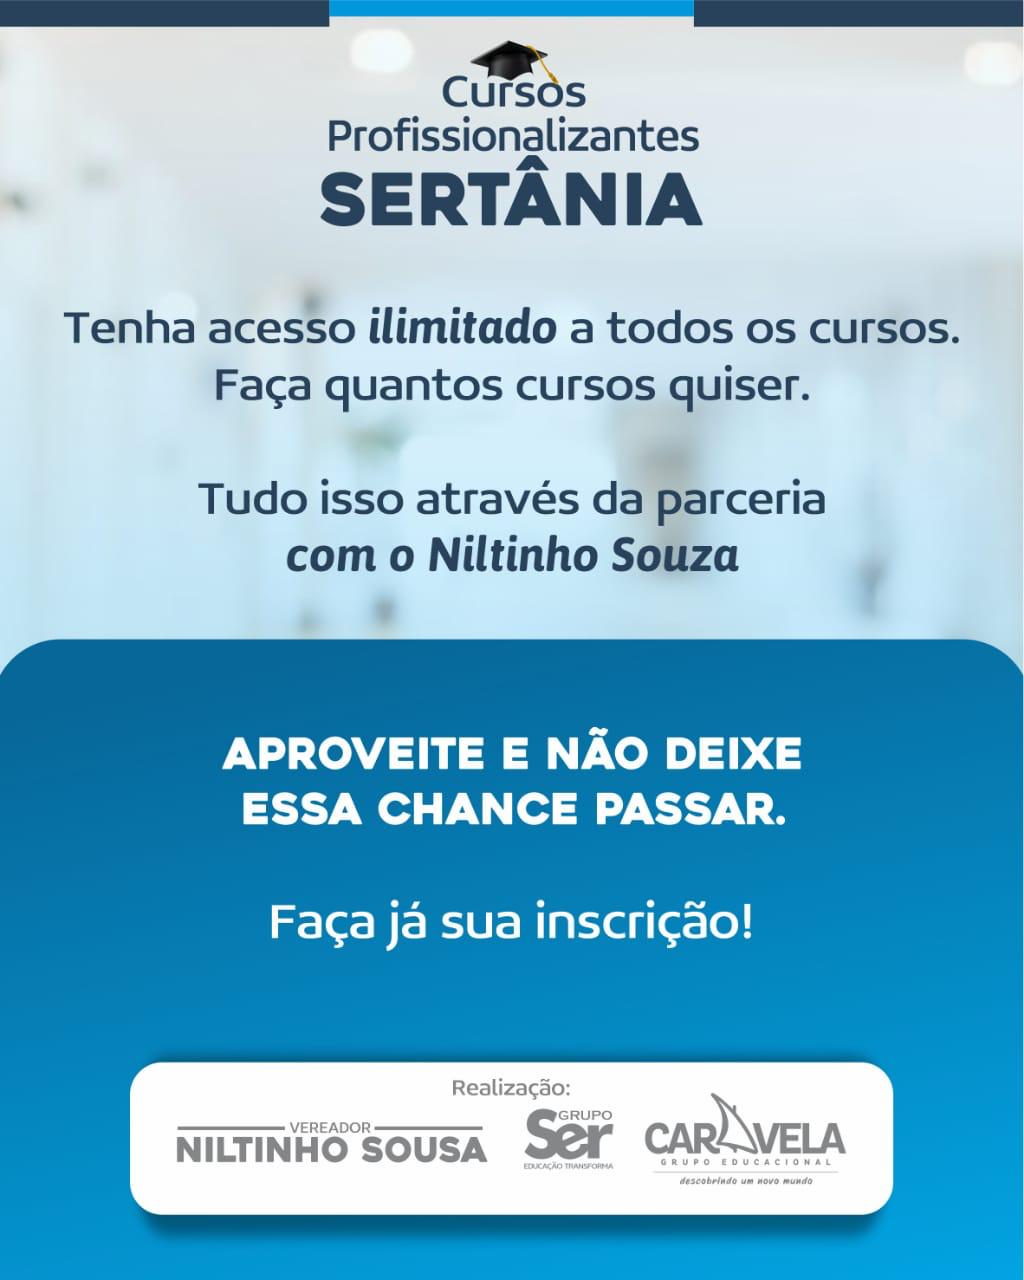 WhatsApp-Image-2021-06-19-at-12.30.59-2 Em Sertânia:  Vereador Niltinho Sousa, fecha parceria com Grupo Educacional para disponibilização de 20 cursos profissionalizantes para 300 pessoas